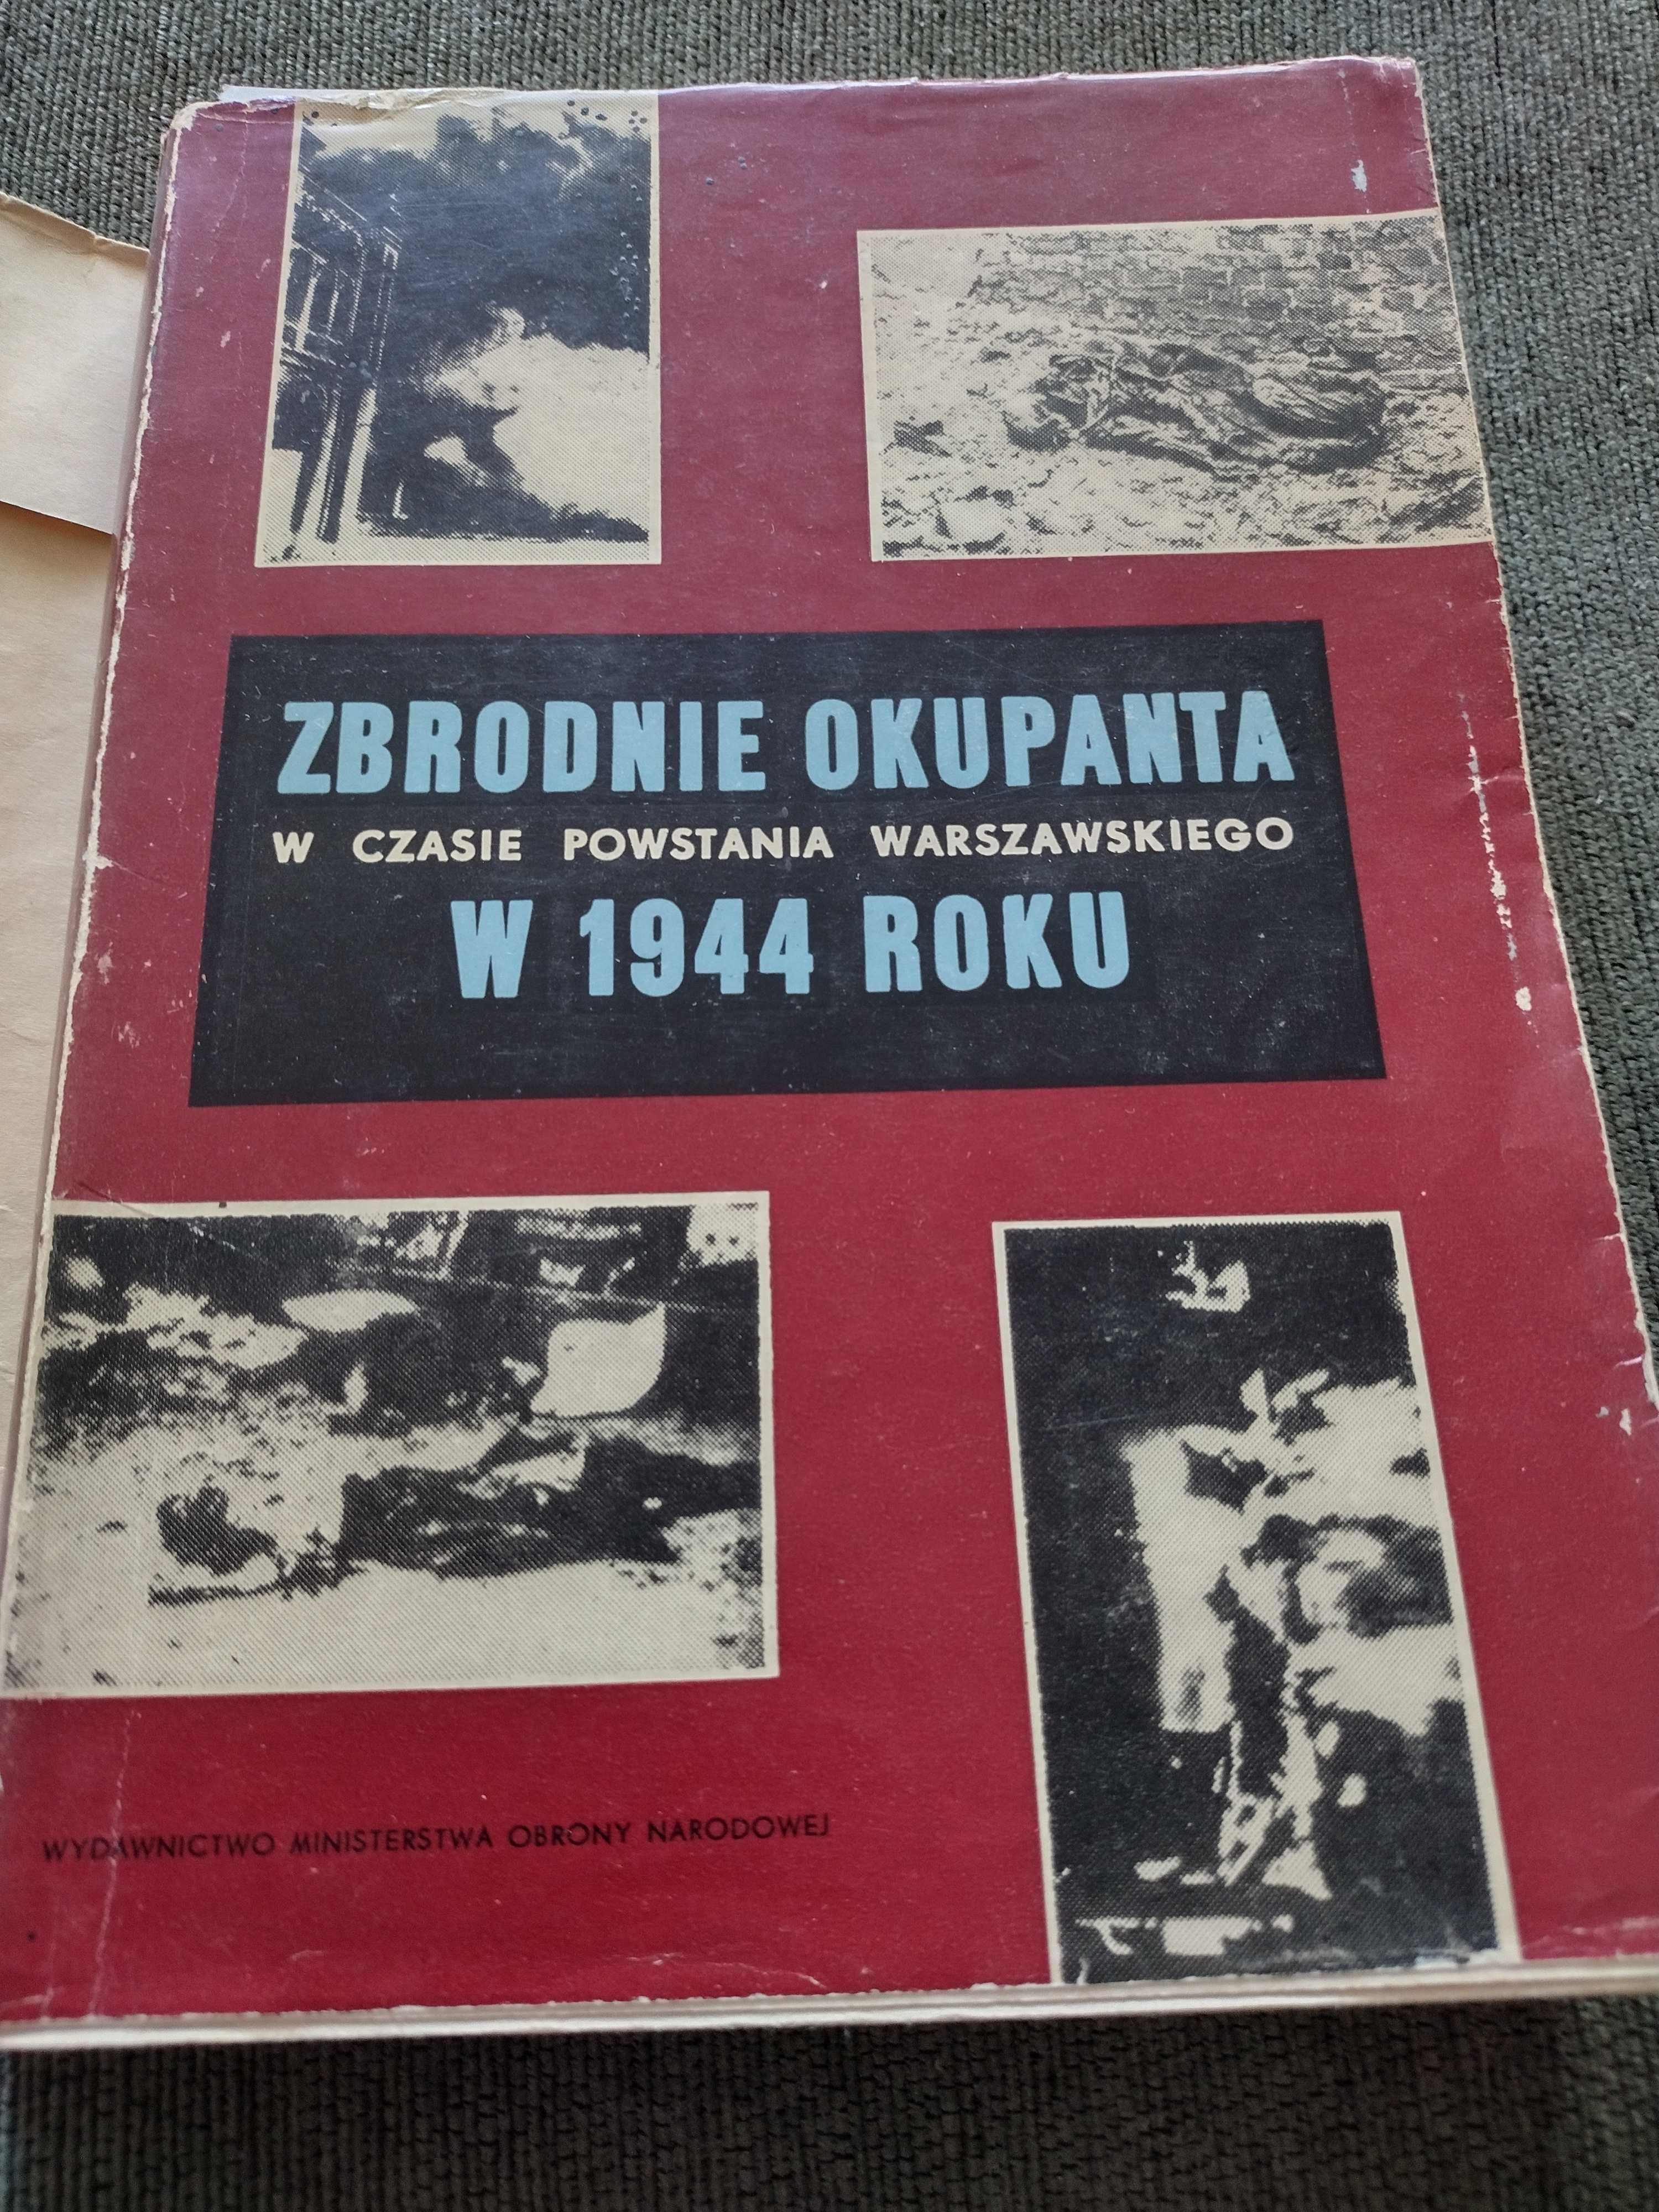 "Zbrodnie okupanta w czasie powstania warszawskiego 1944 roku"